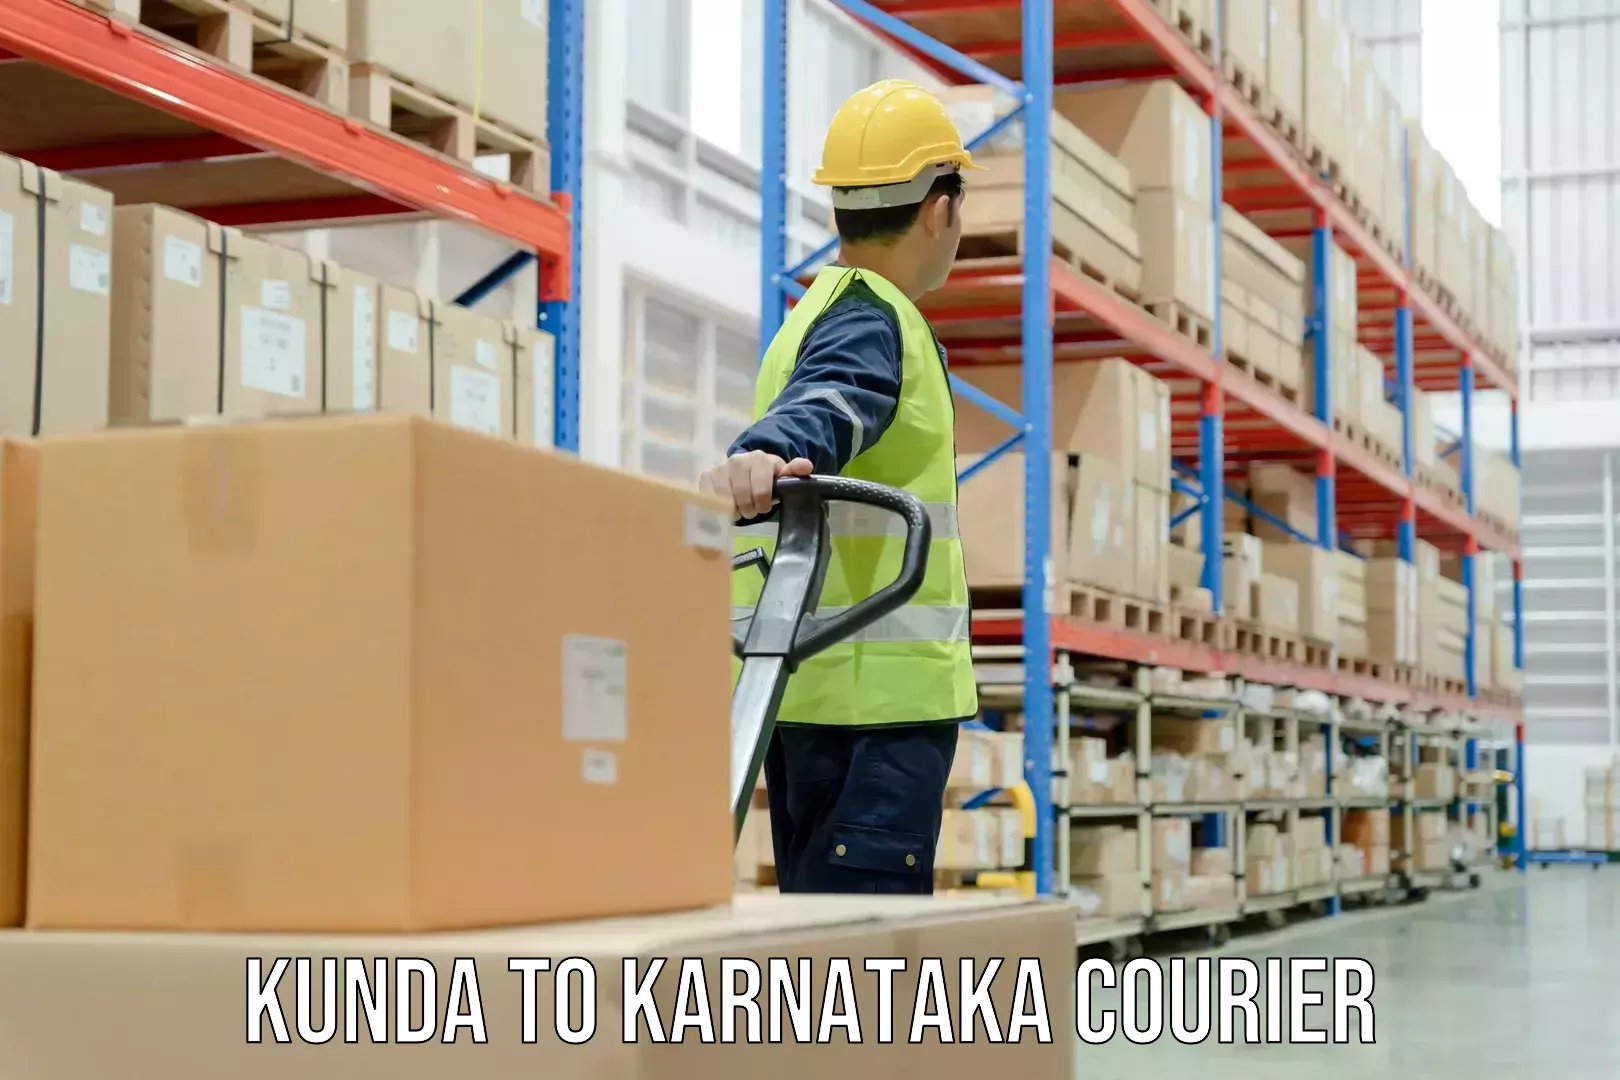 Customizable shipping options in Kunda to Ballari